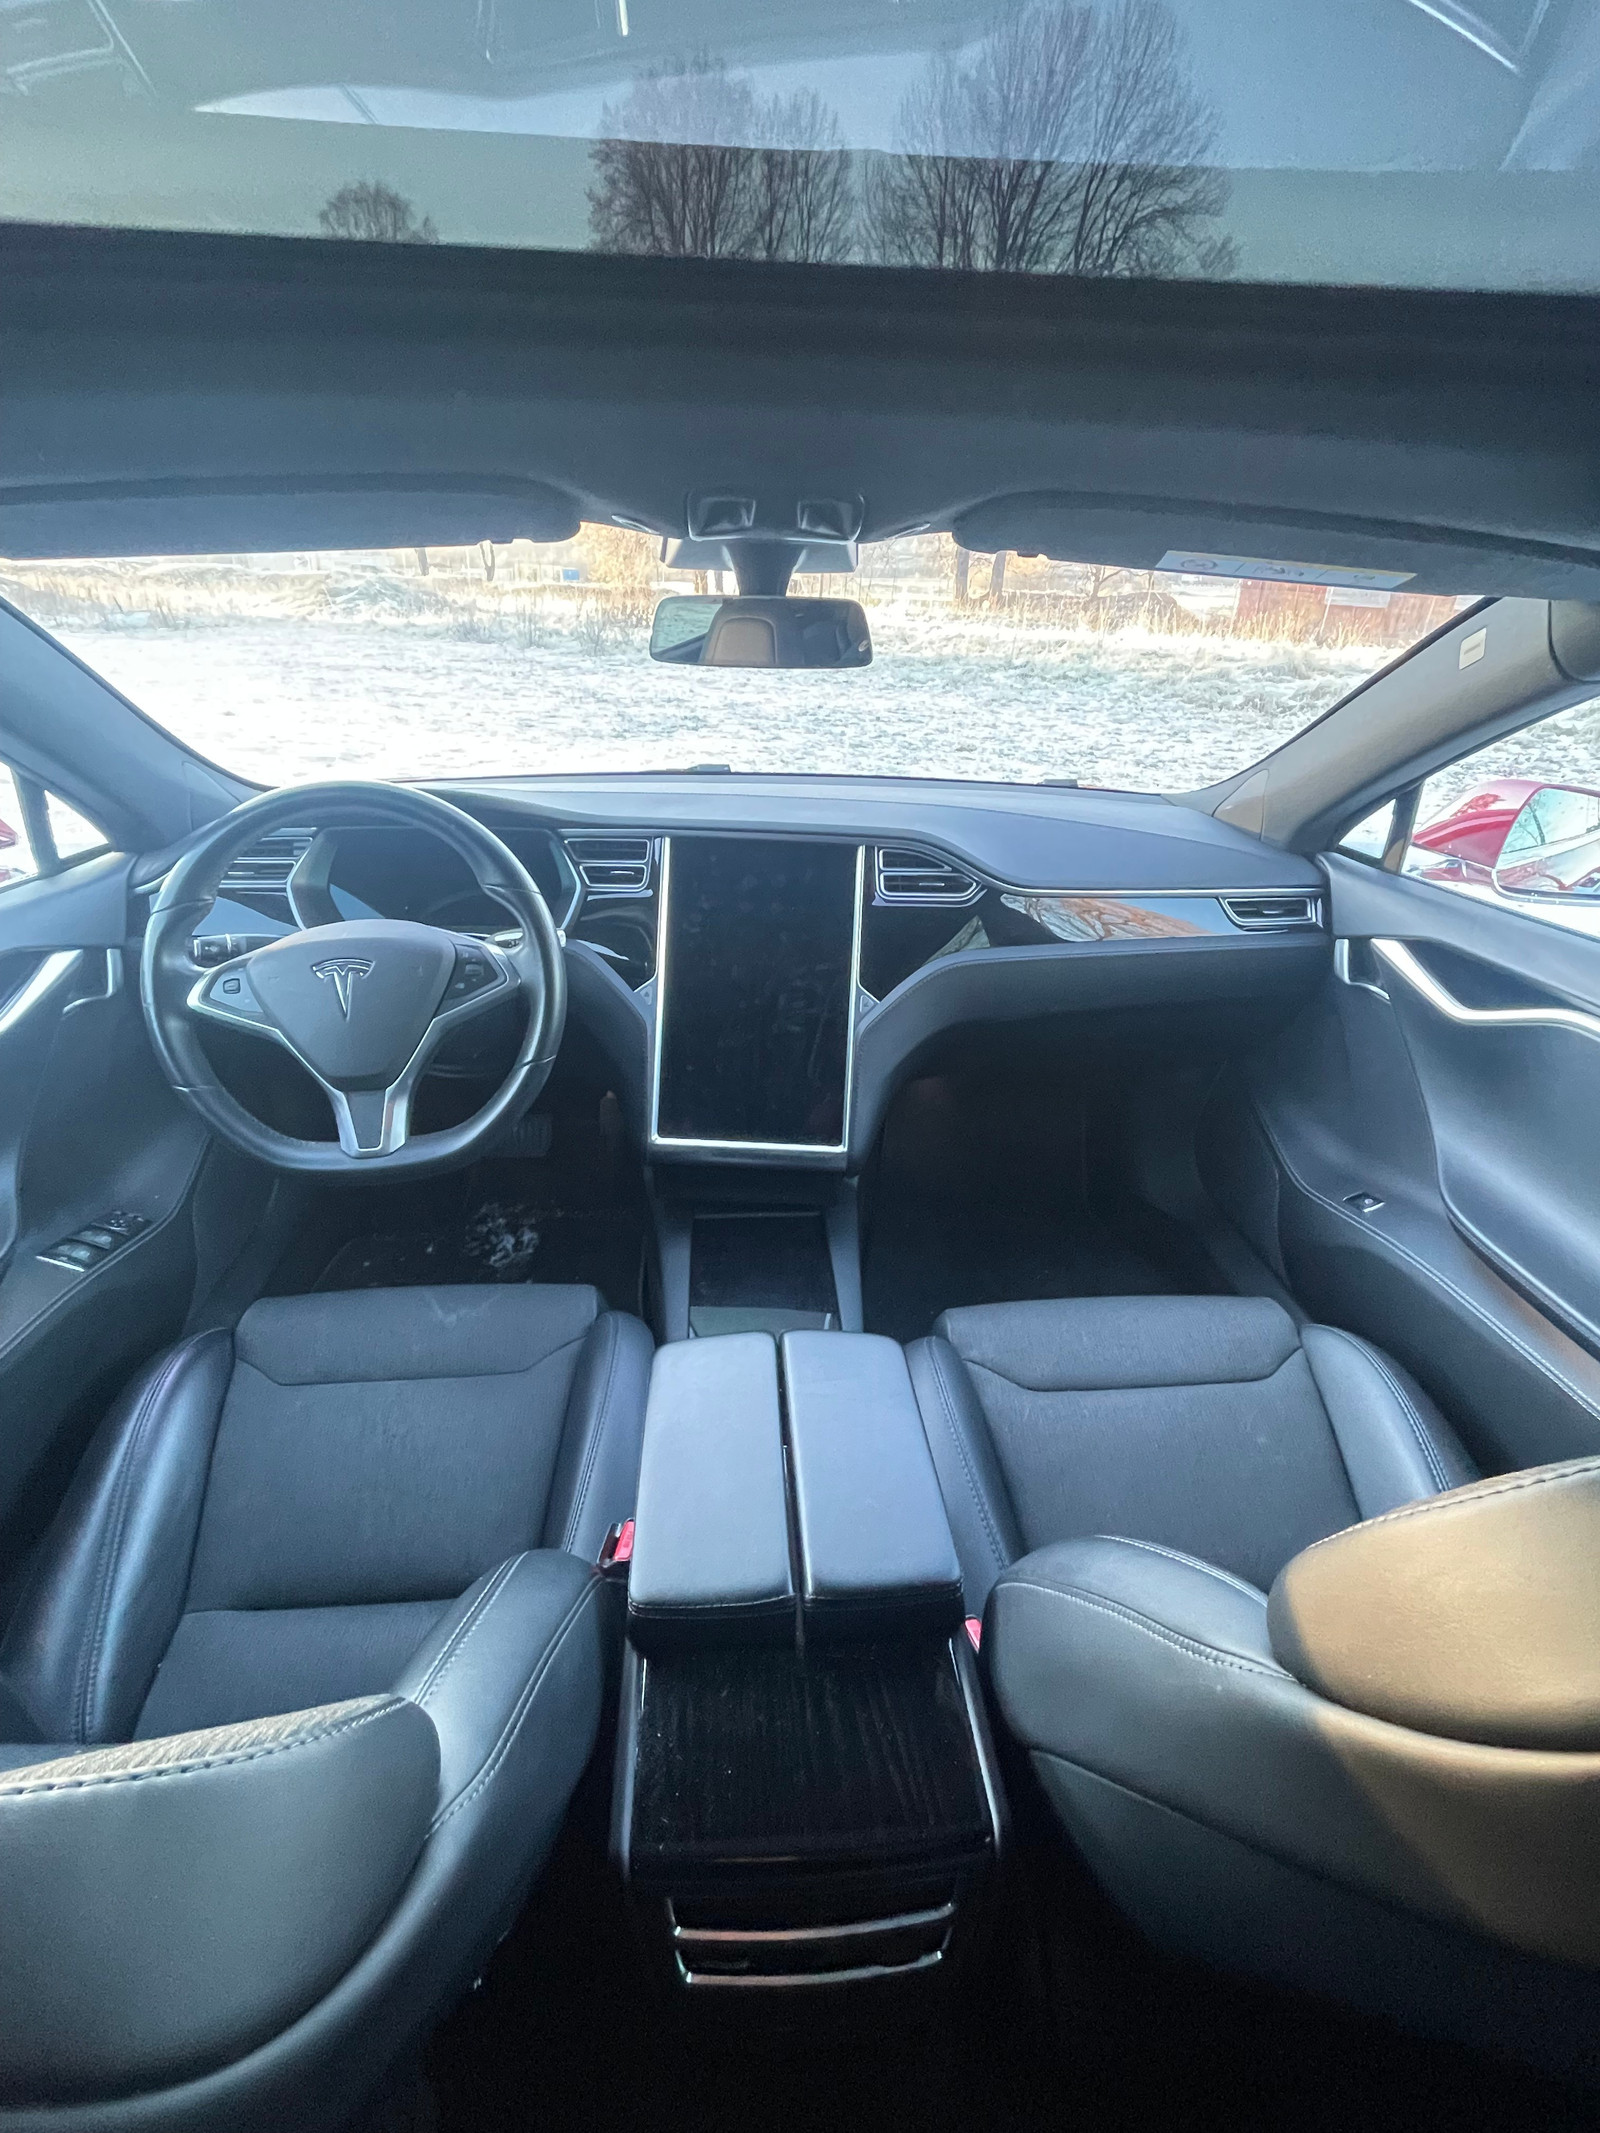 Bilde 20 av Tesla Model S